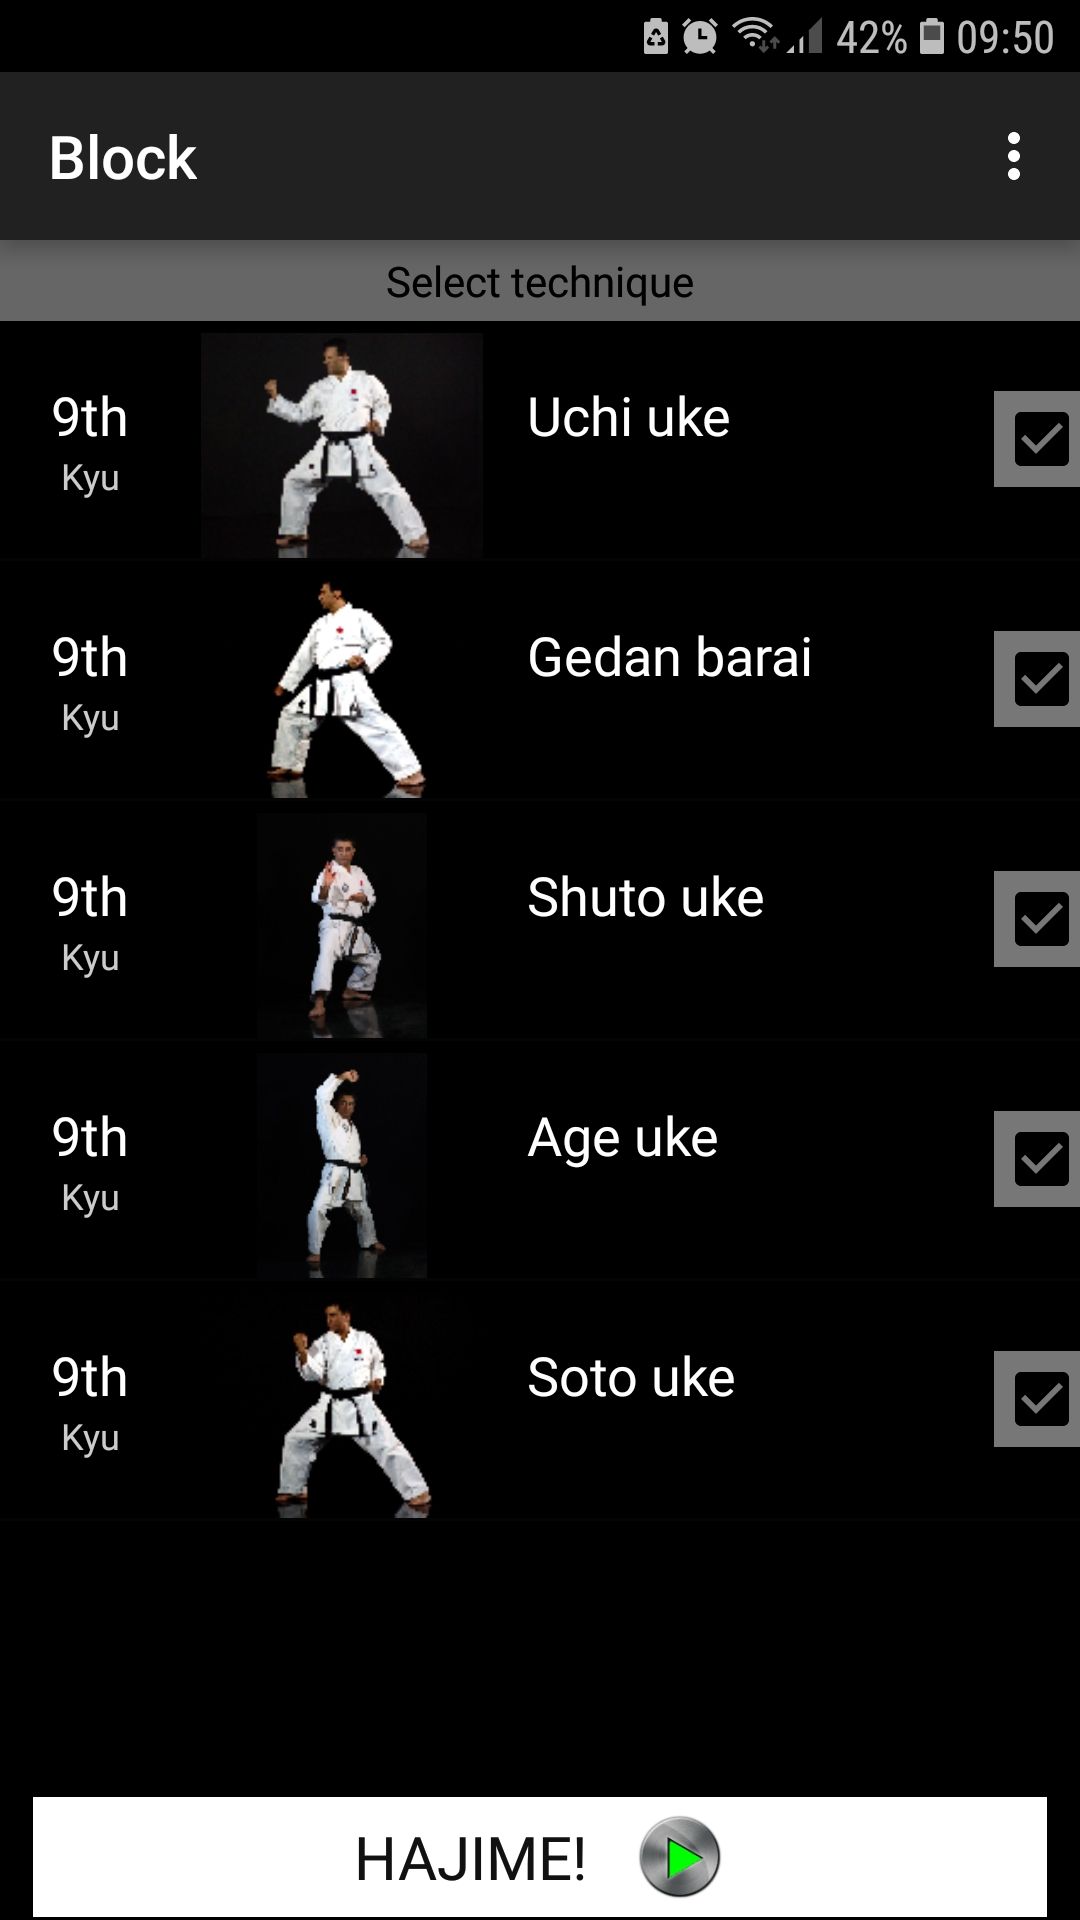 Shotokan Karate mobile app select technique